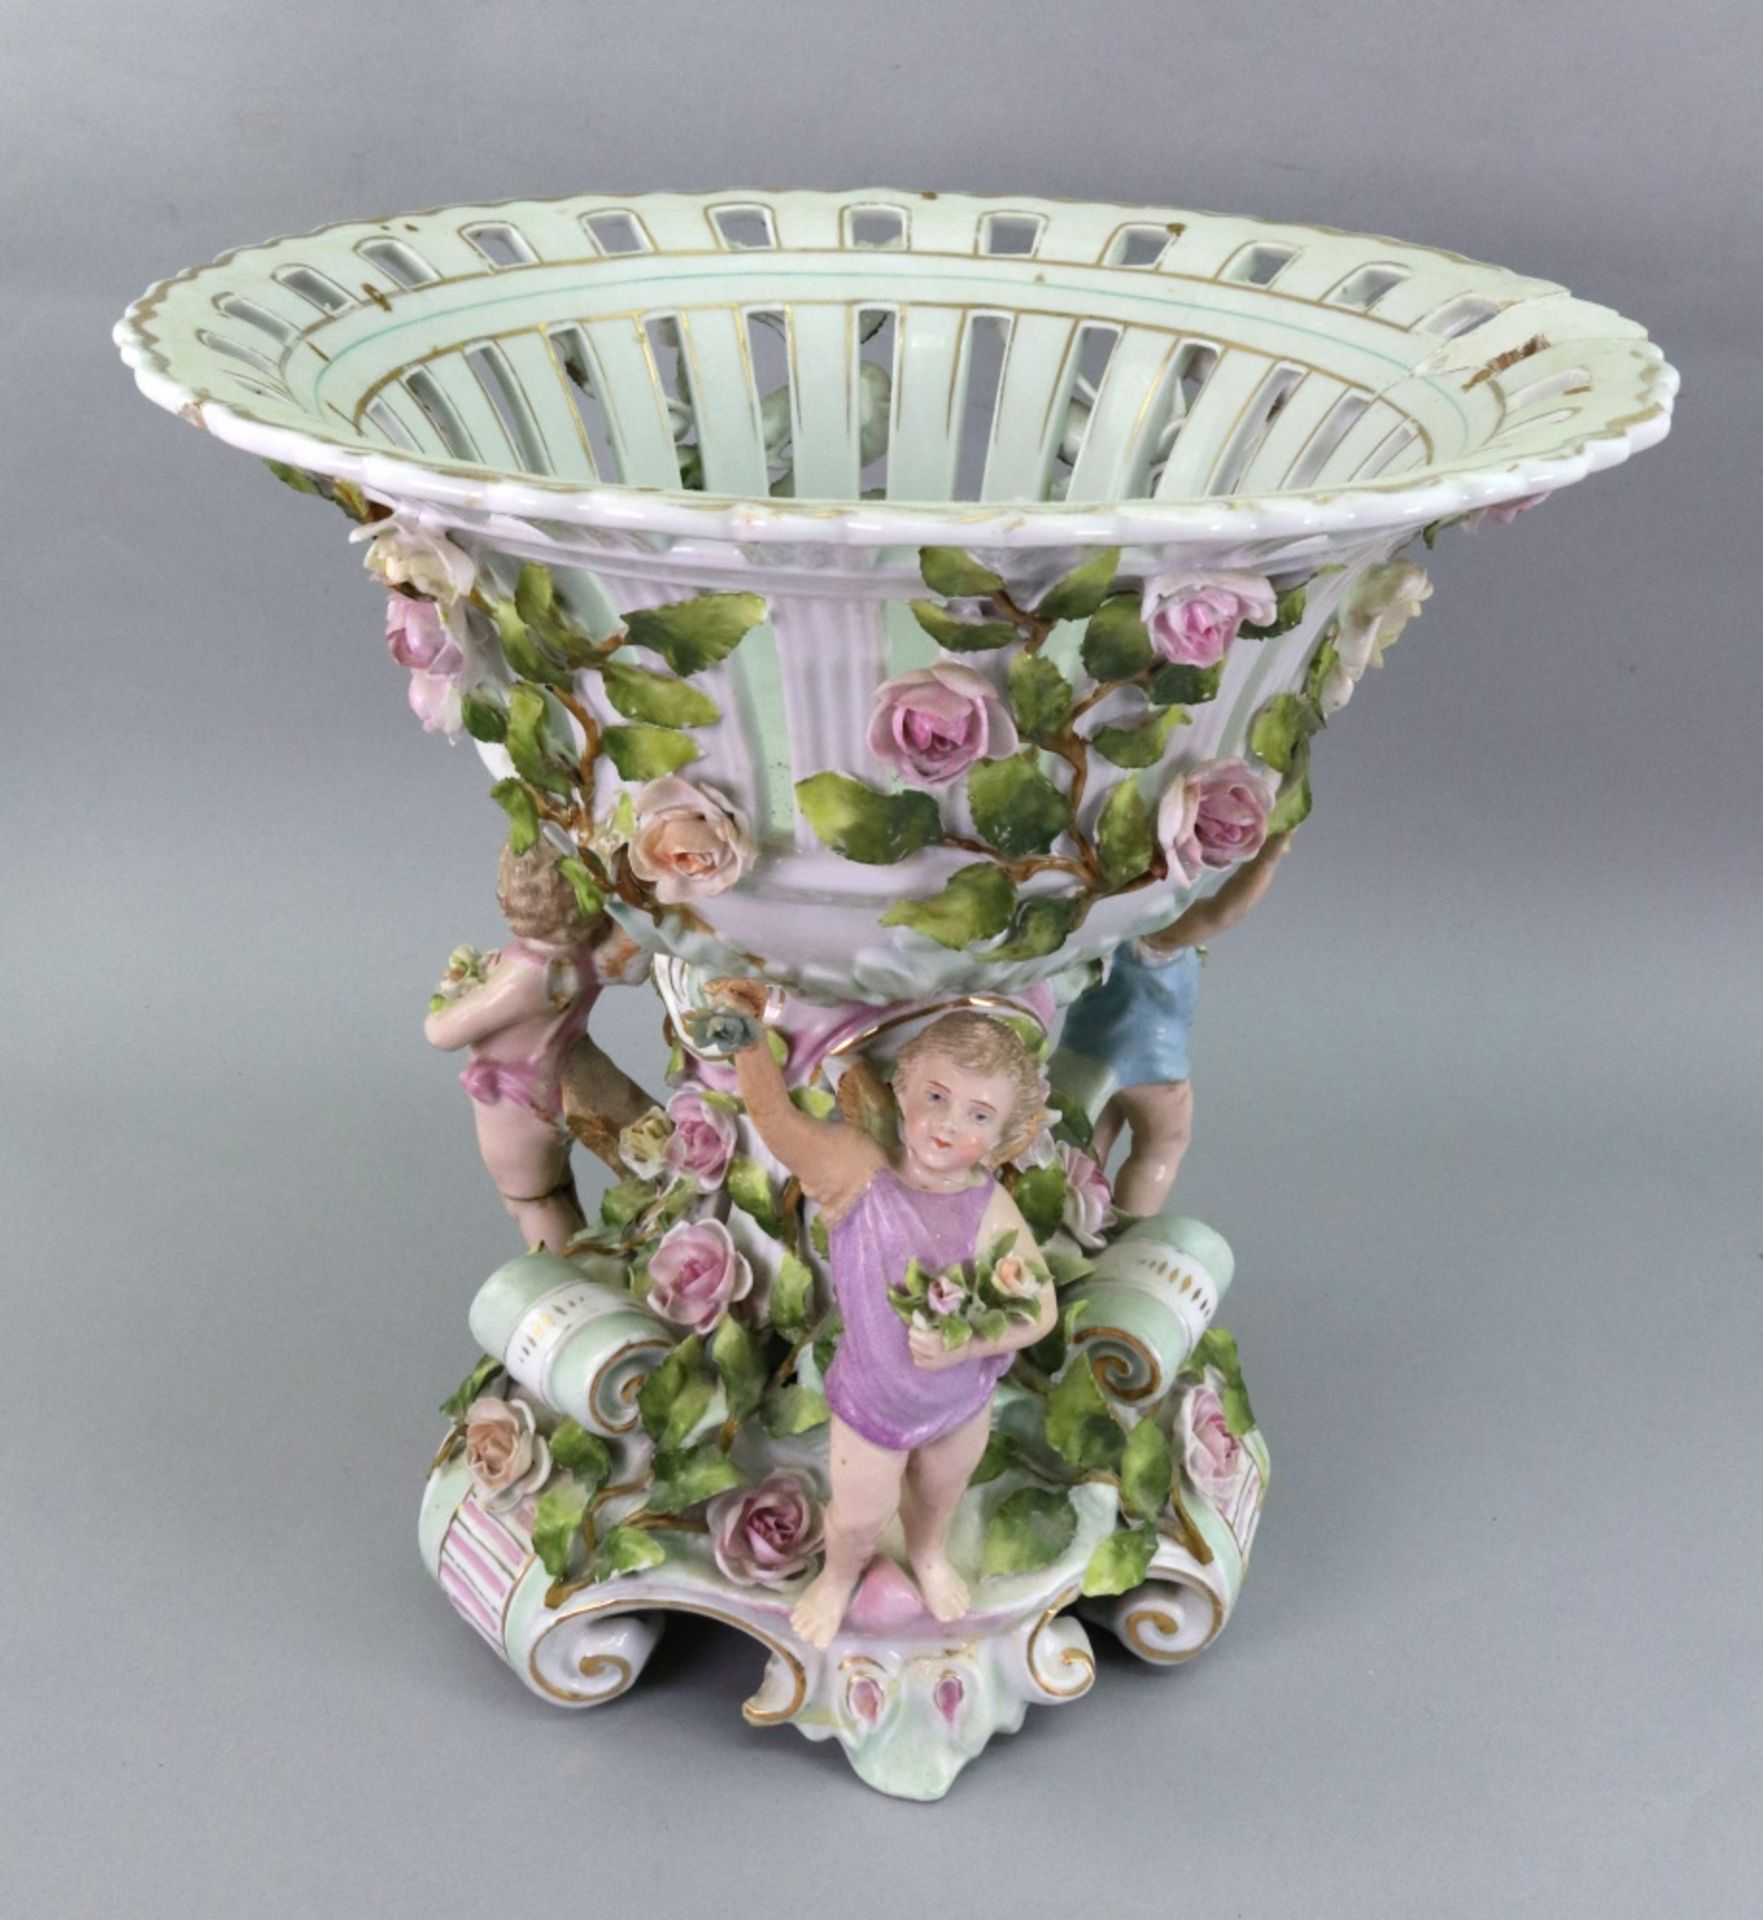 A Sitzendorf porcelain centre-piece, late 19th century,